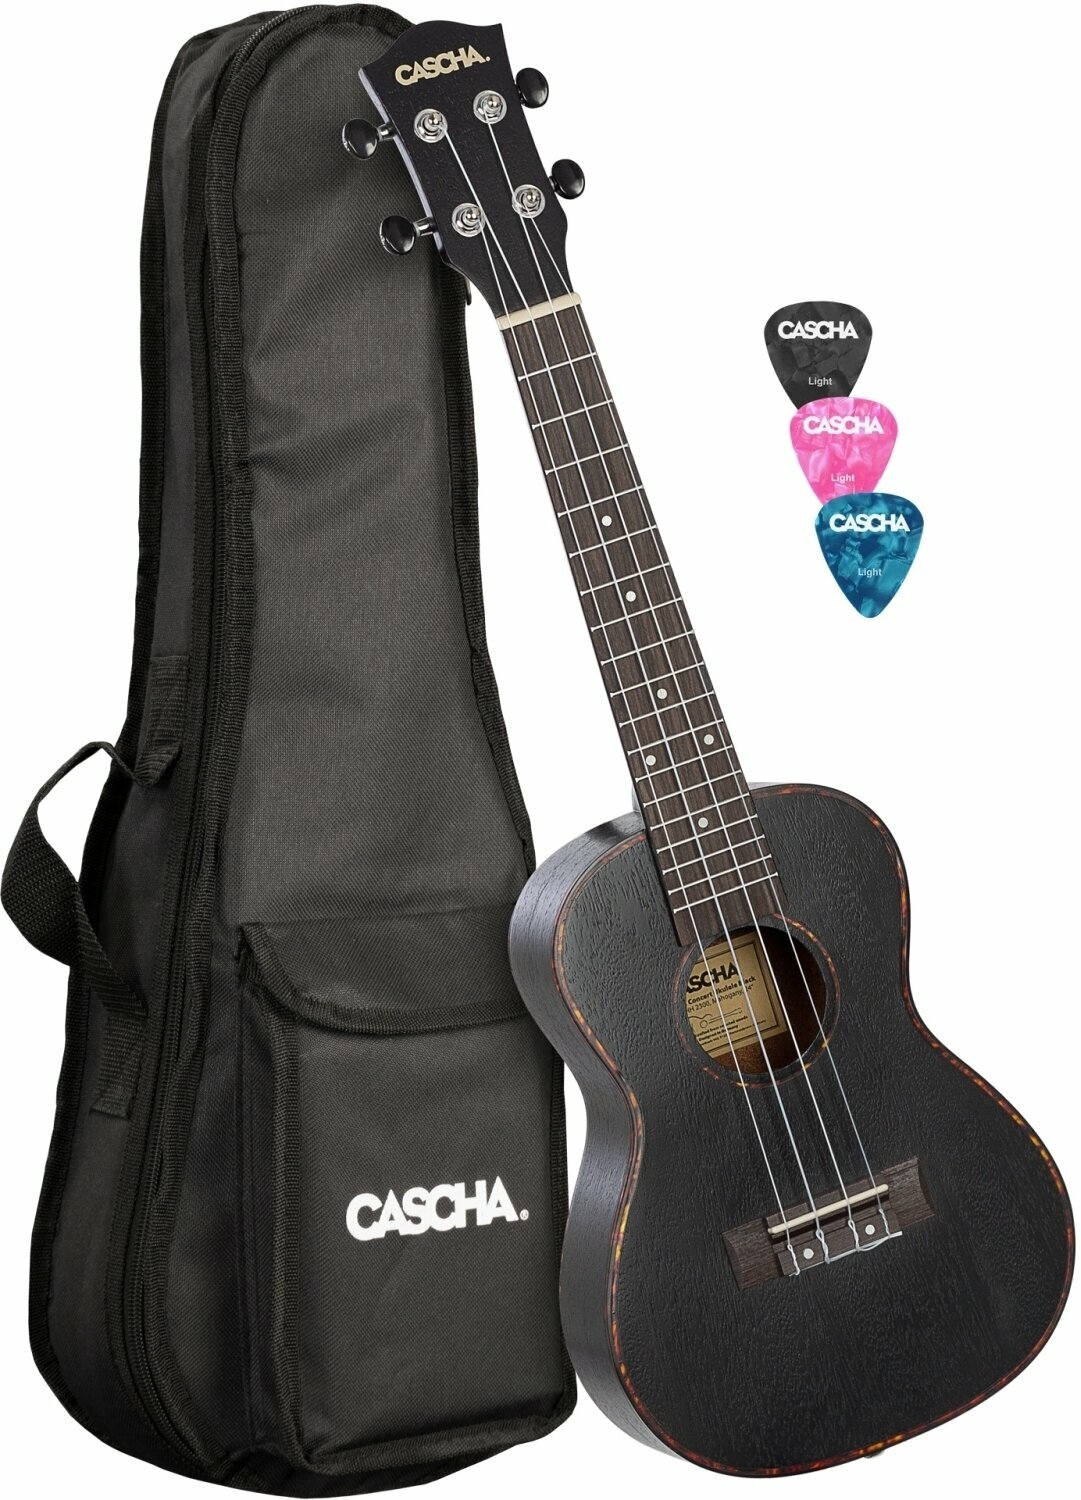 Koncertne ukulele Cascha HH 2300L Koncertne ukulele Black